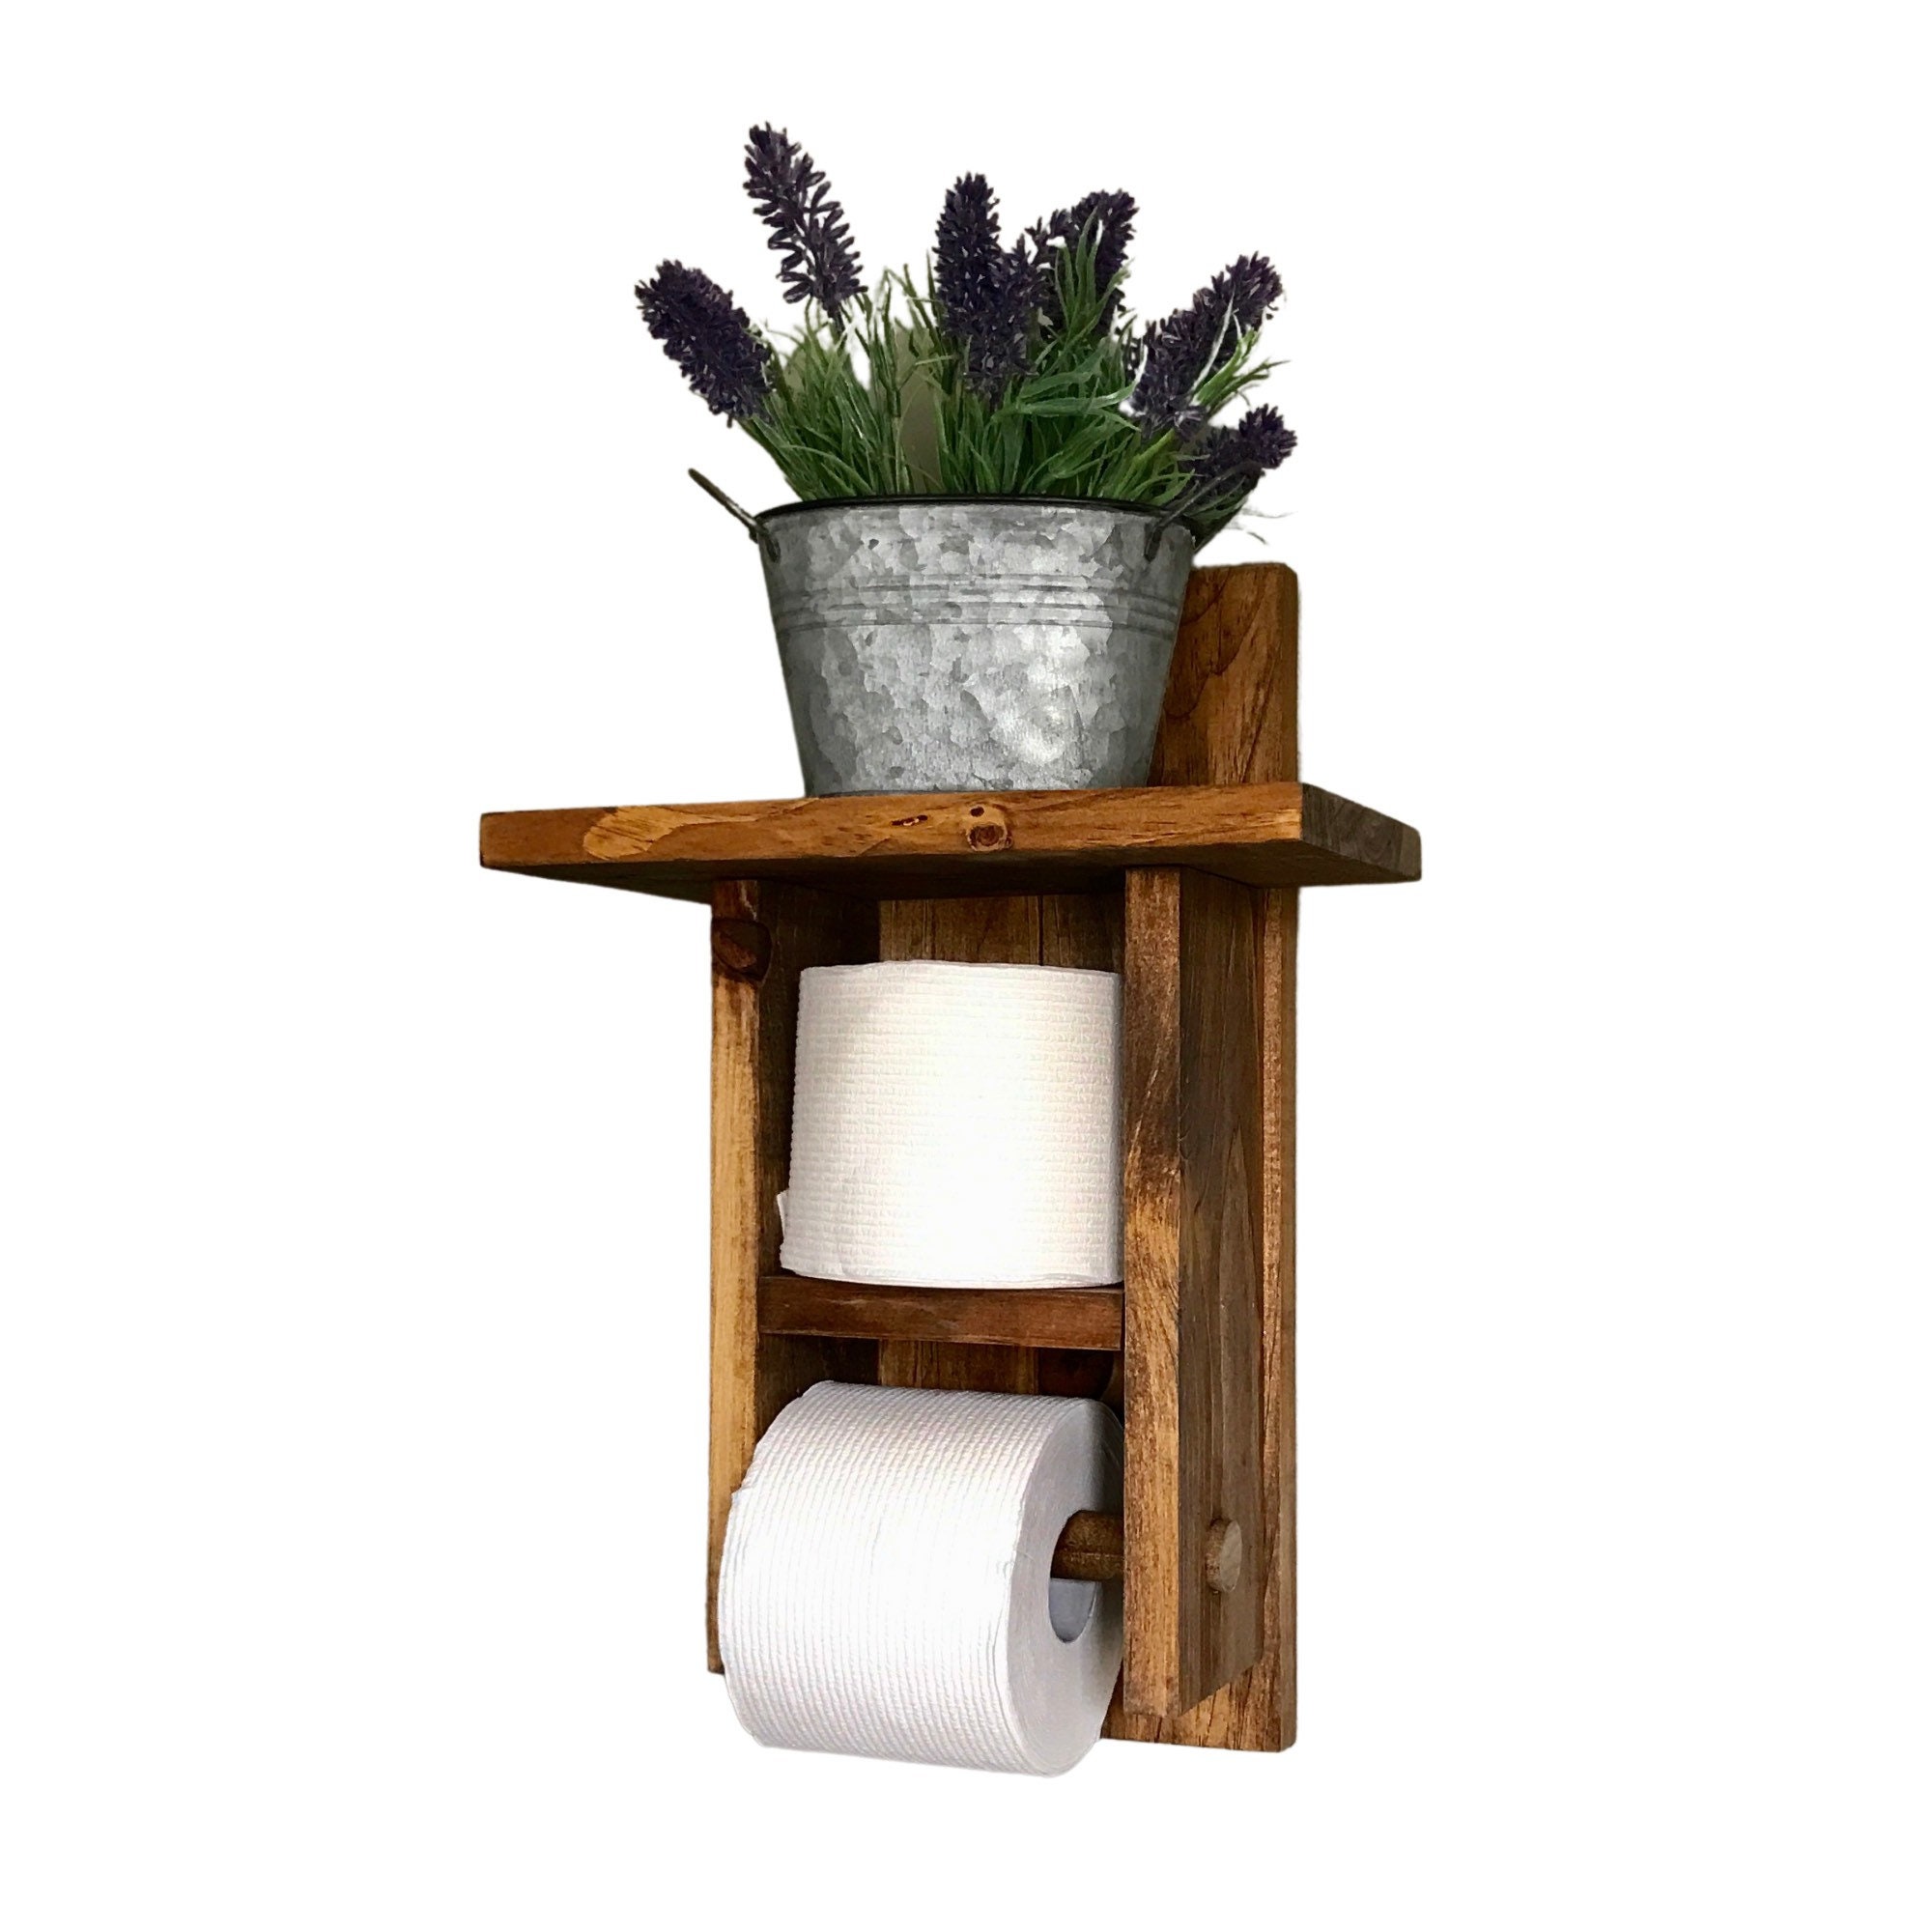 Pinar-Shop - Hermoso organizador de papel higiénico hecho en madera para  darle un toque elegante y diferente a tu baño!! 🤩🤩 Medidas 75 de altura  x18 de ancho Disponemos en dos colores